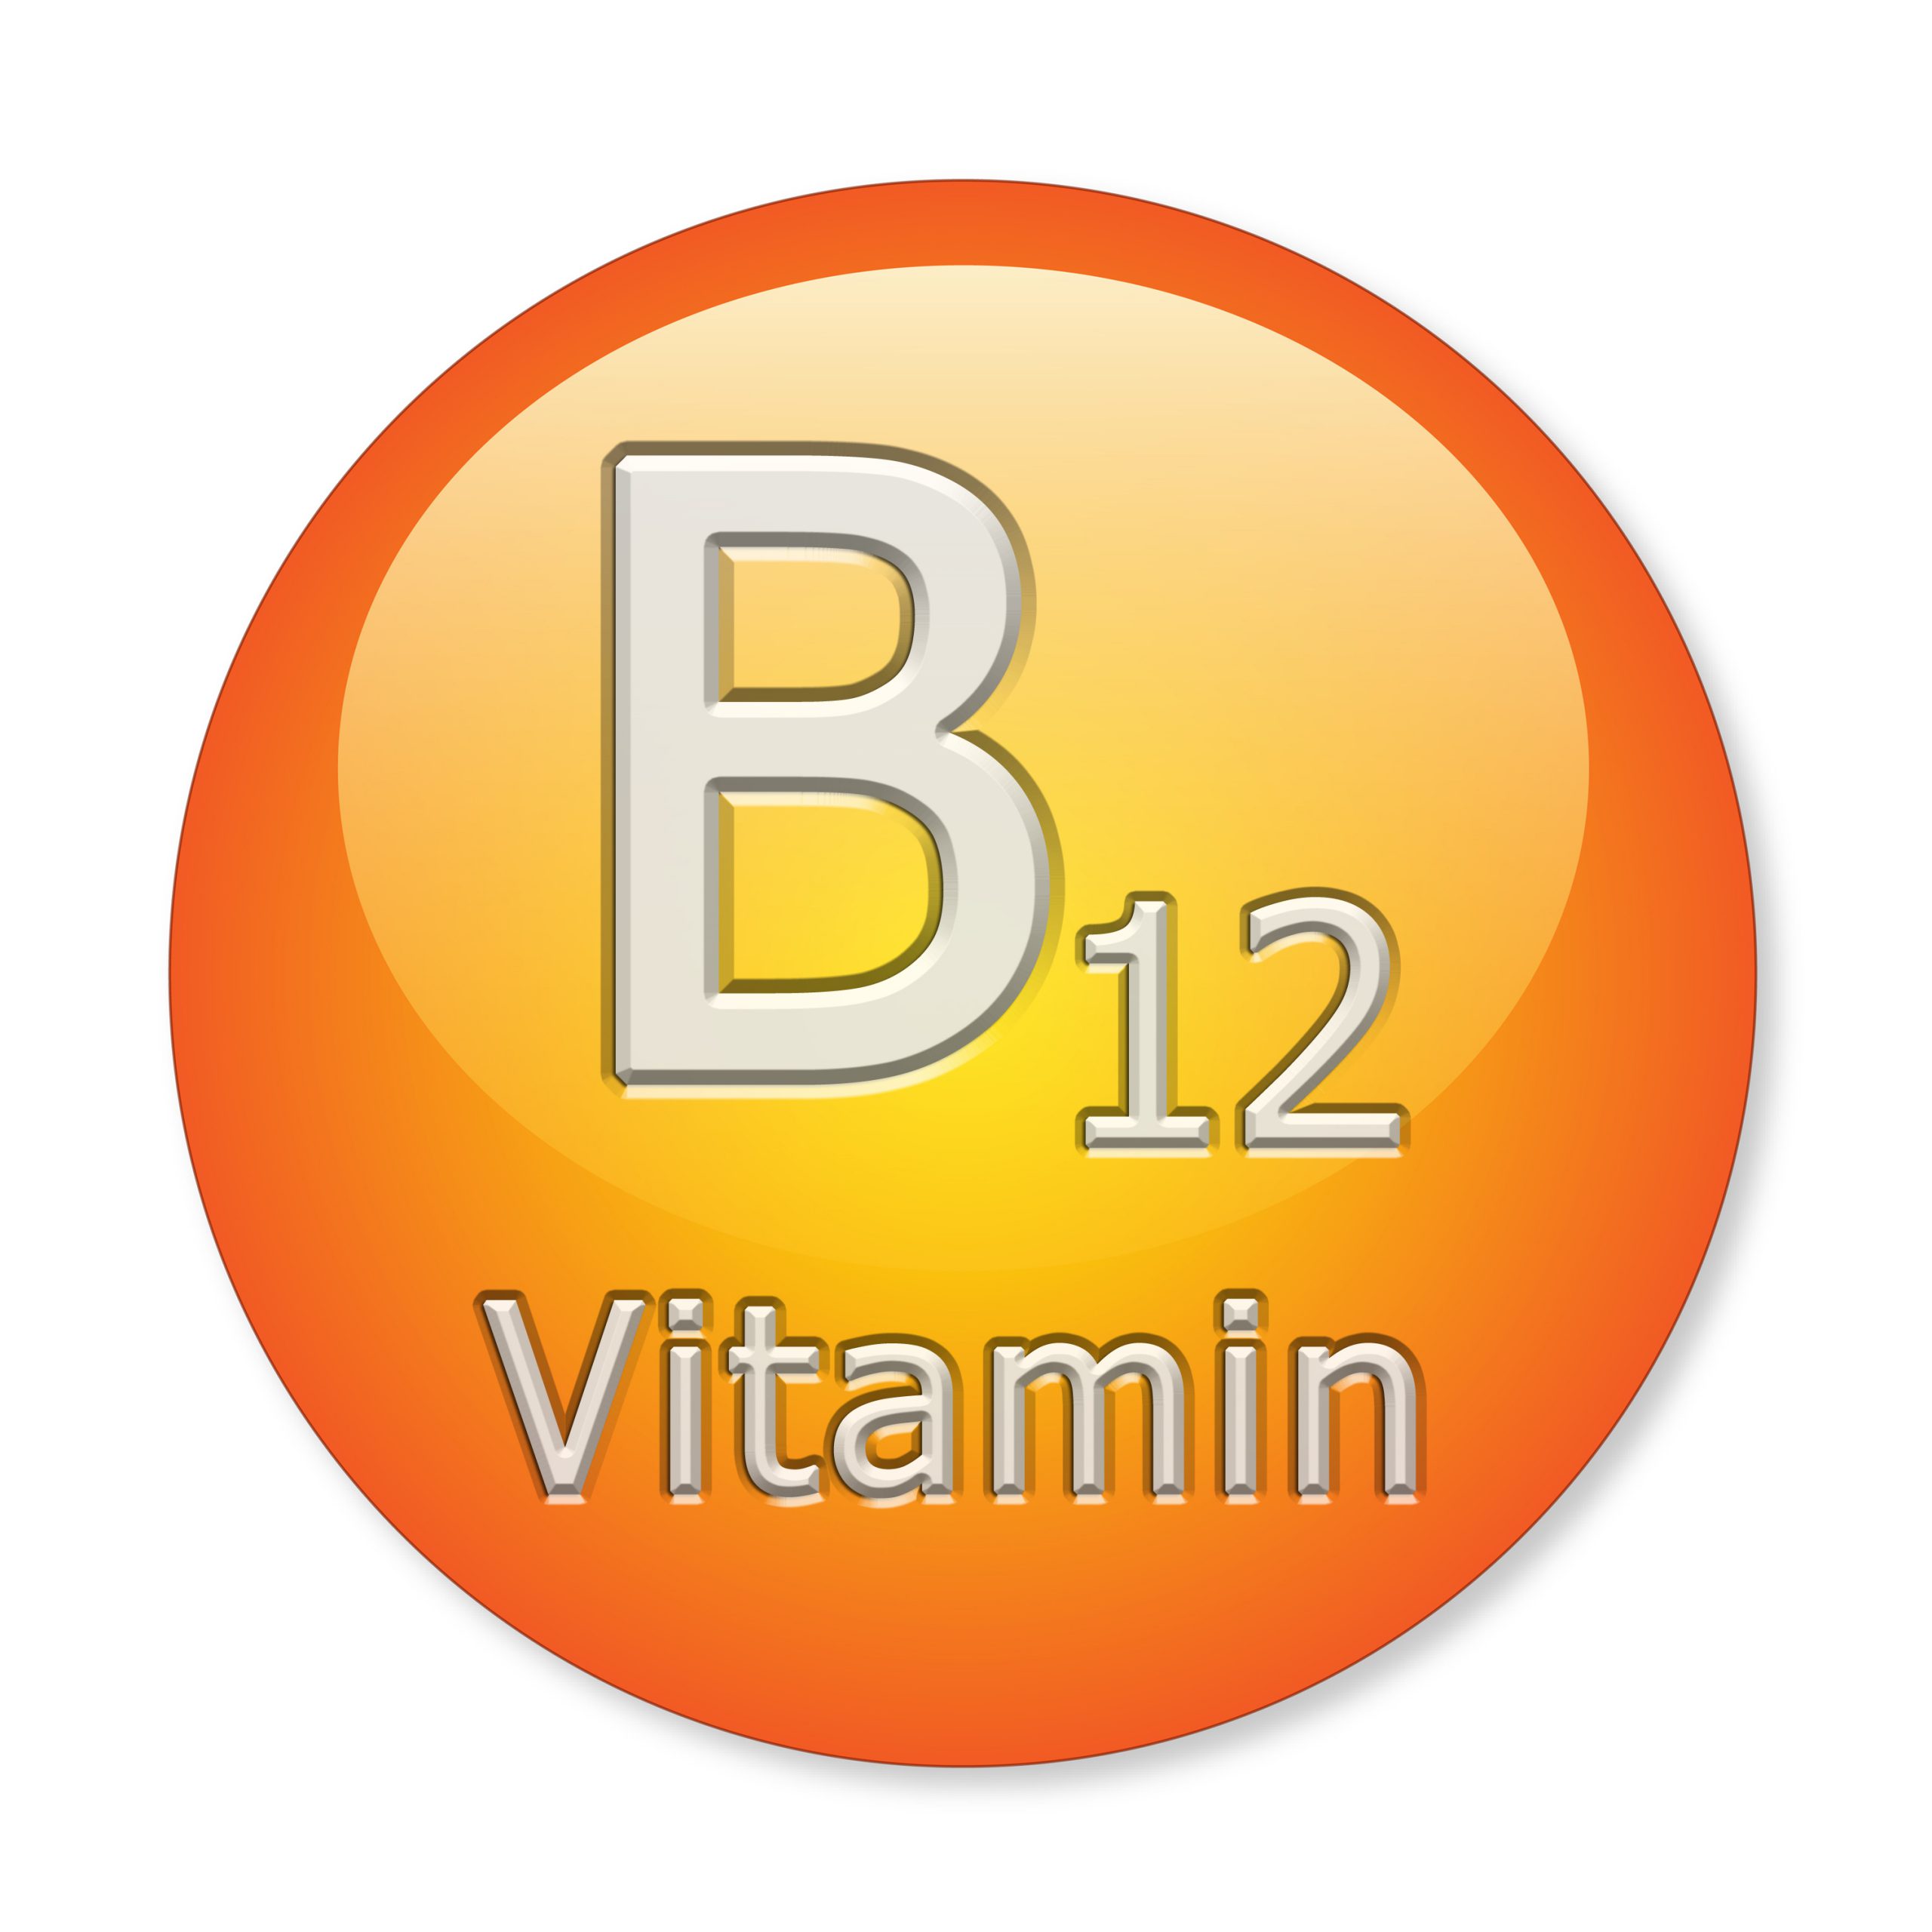 b12 vitamin scaled